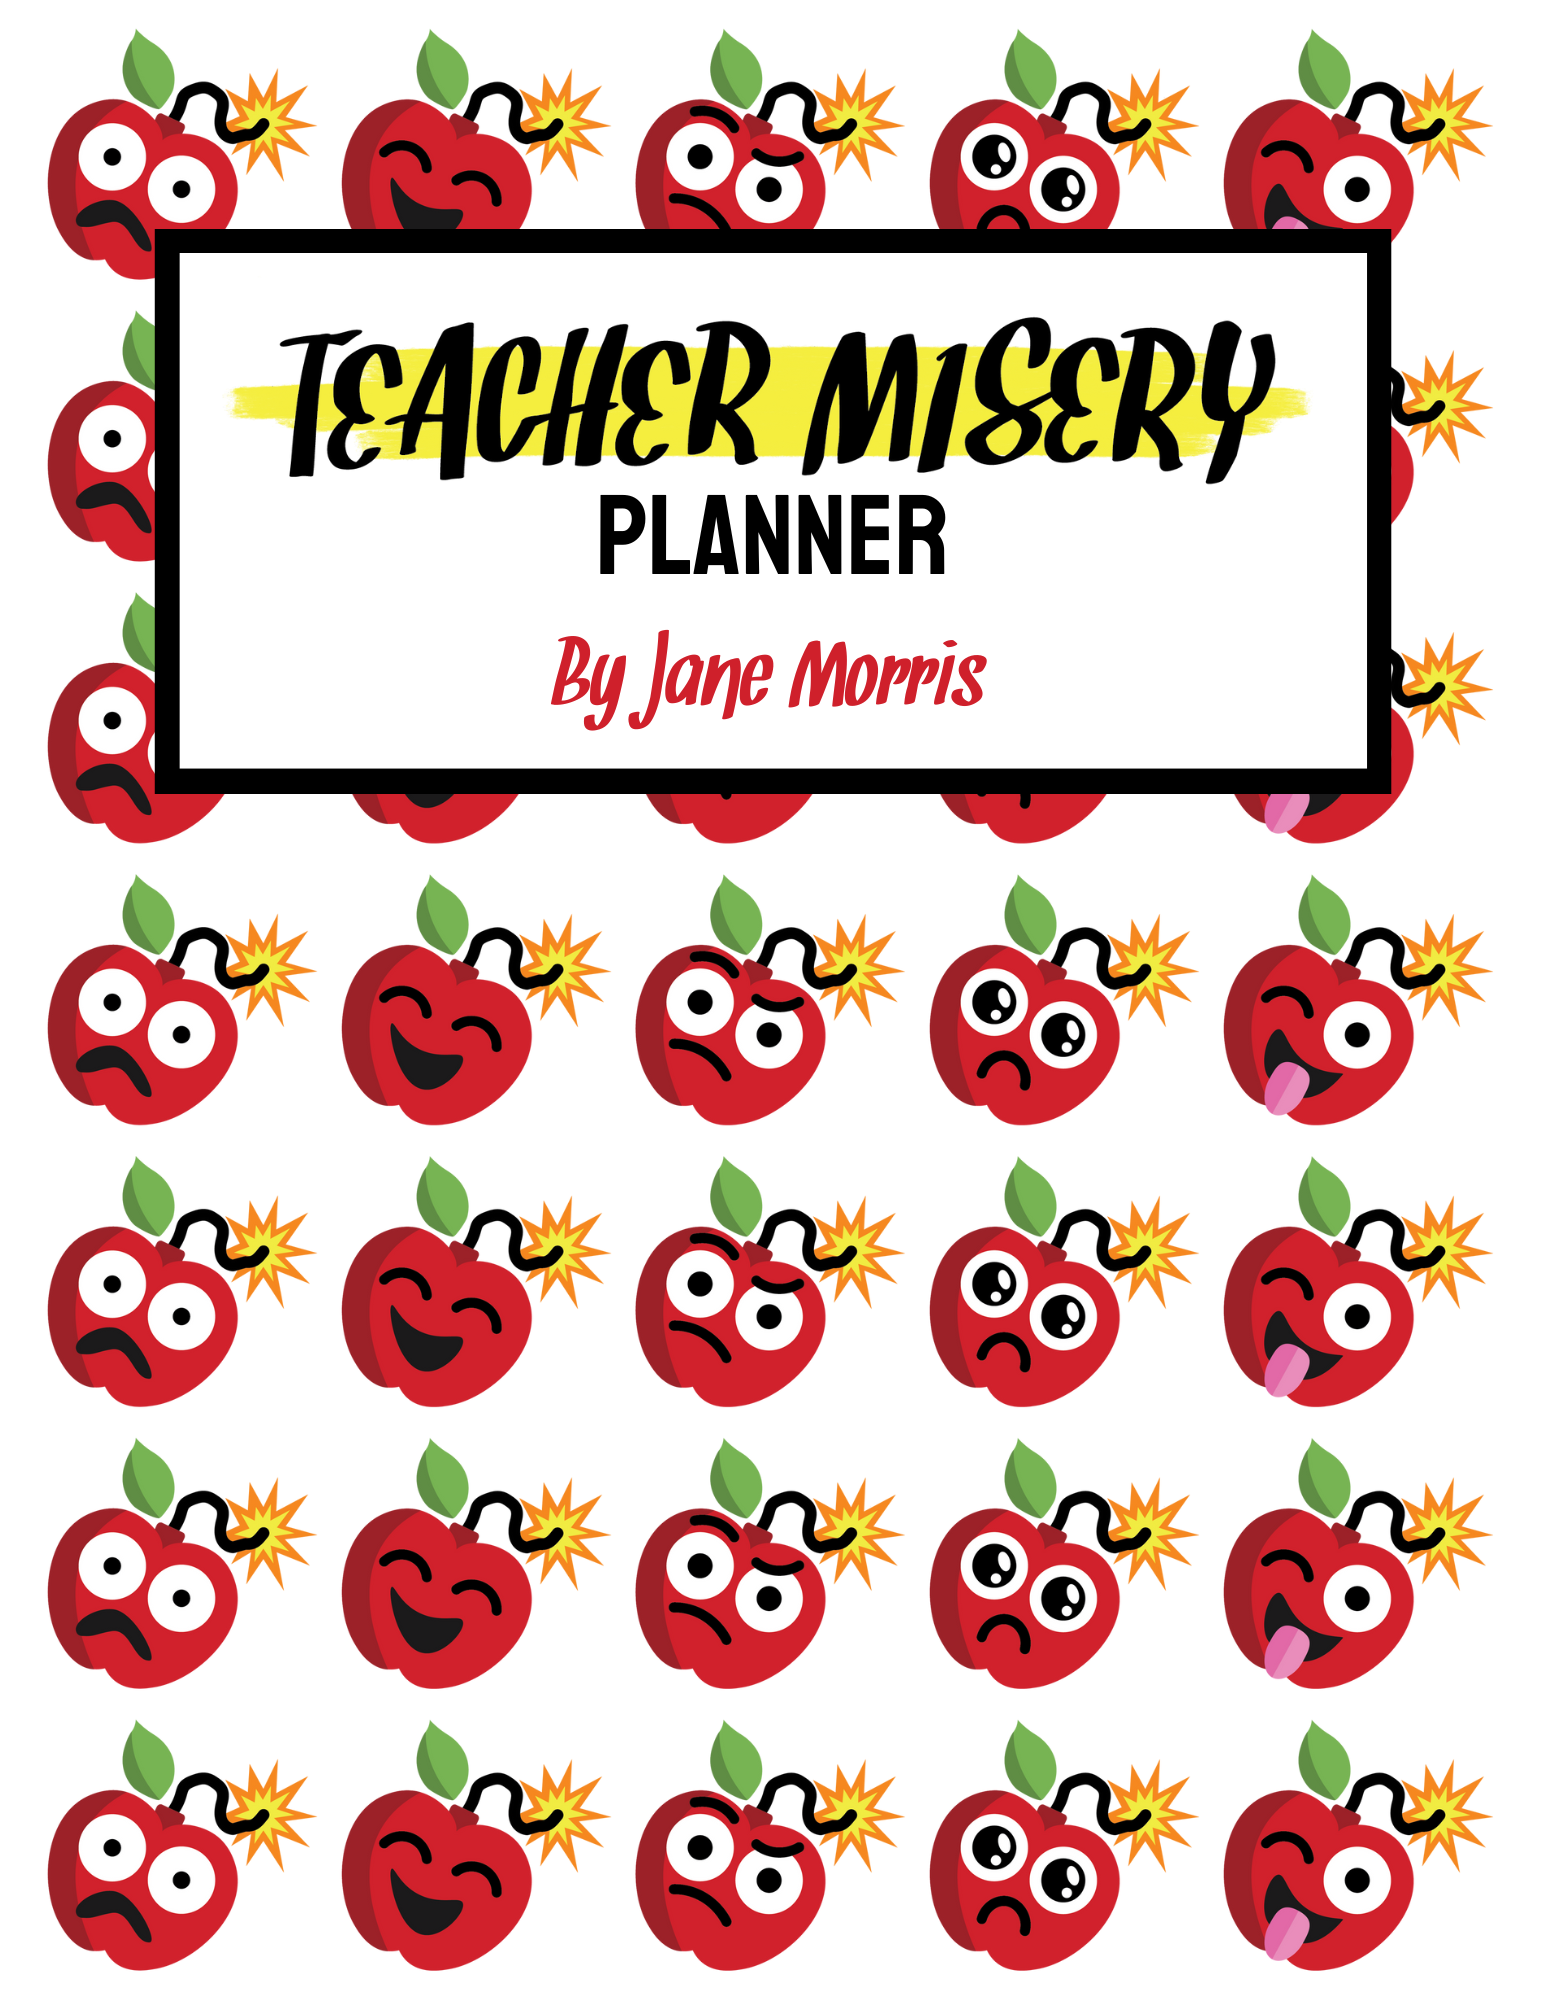 Teacher Misery teacher planner cover.